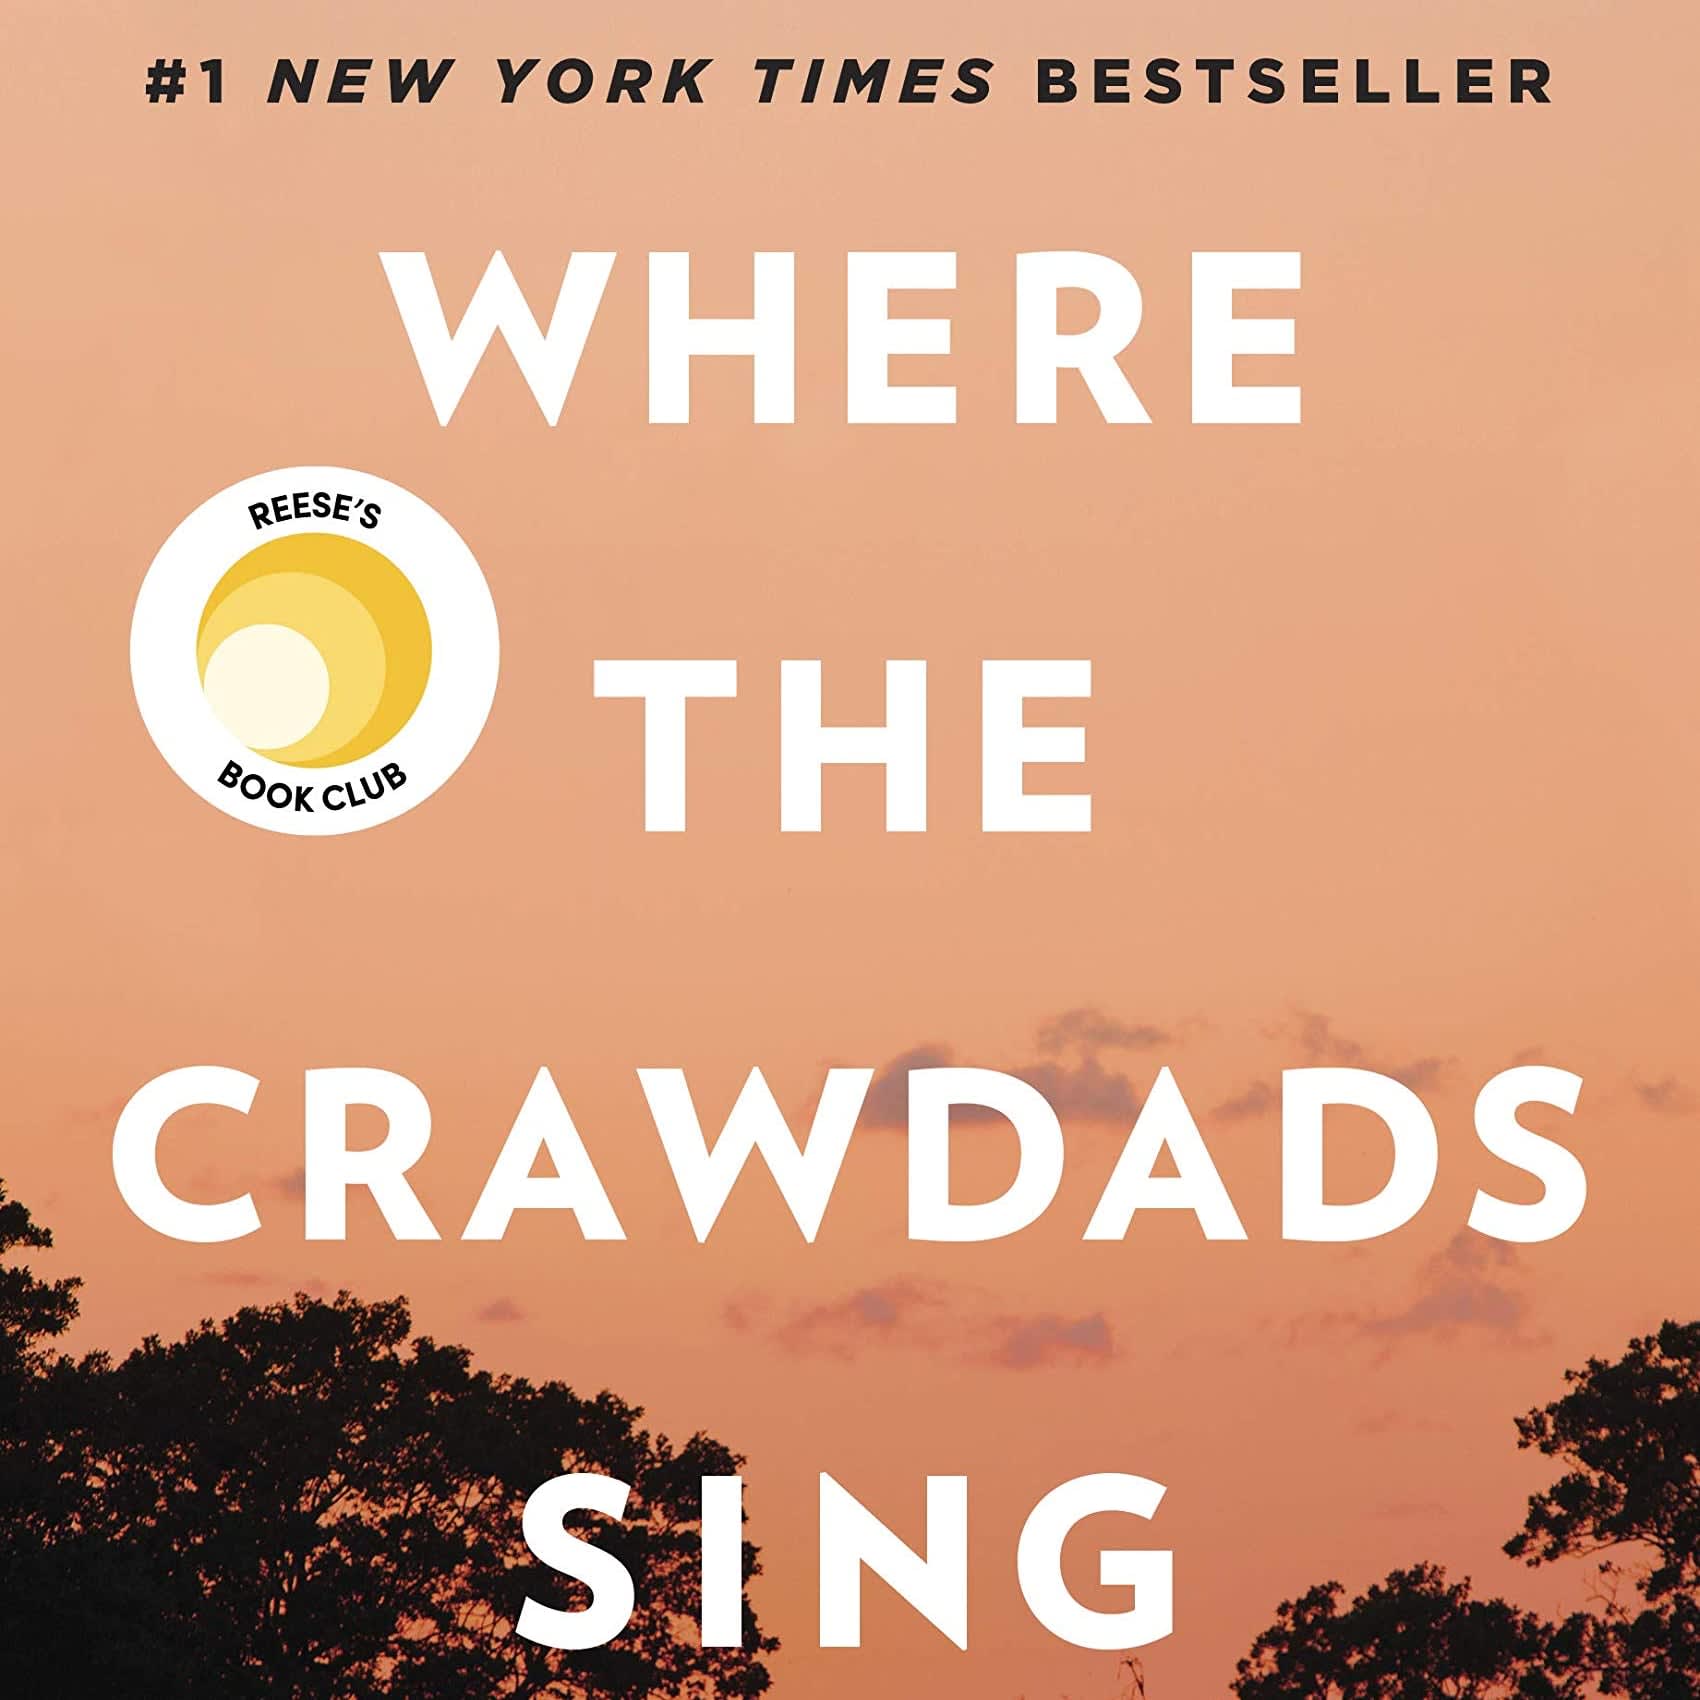 Crawdads sing